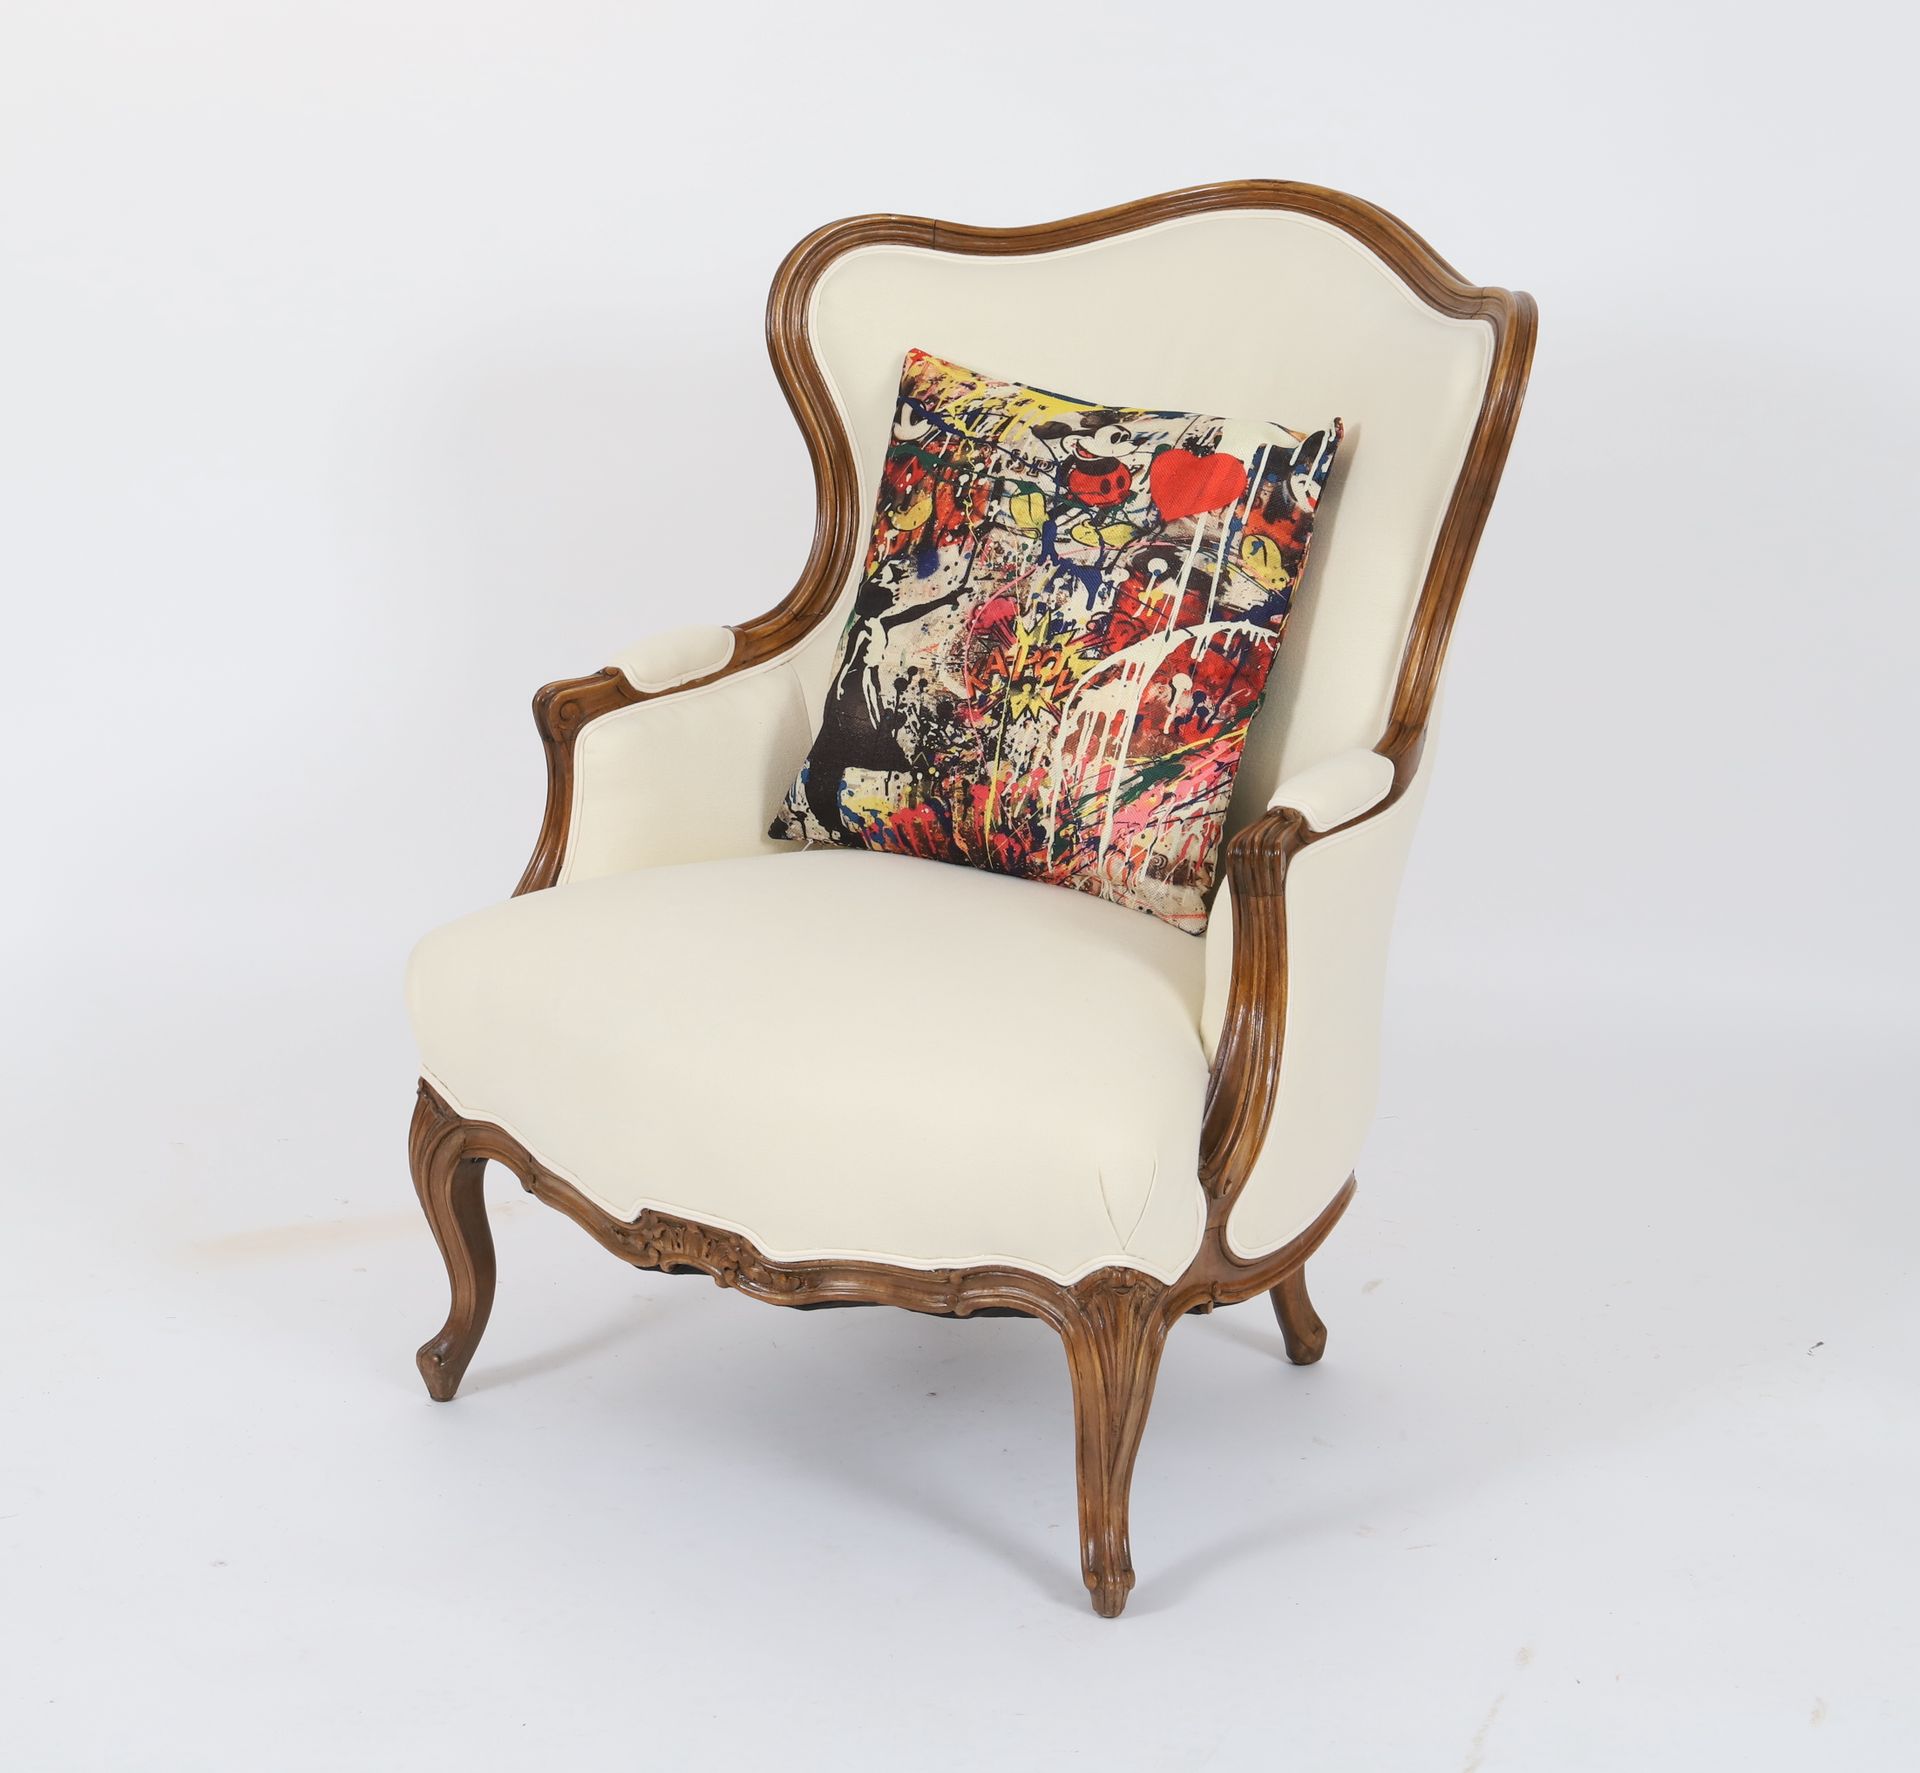 Null 路易十五时期的贝热尔
天然木质，靠背和座椅均以奶油色棉布装饰，安放在四条拱形腿上。
随附一个班克斯垫子。
修复后可供使用和维护
十九世纪
尺寸：高：9&hellip;